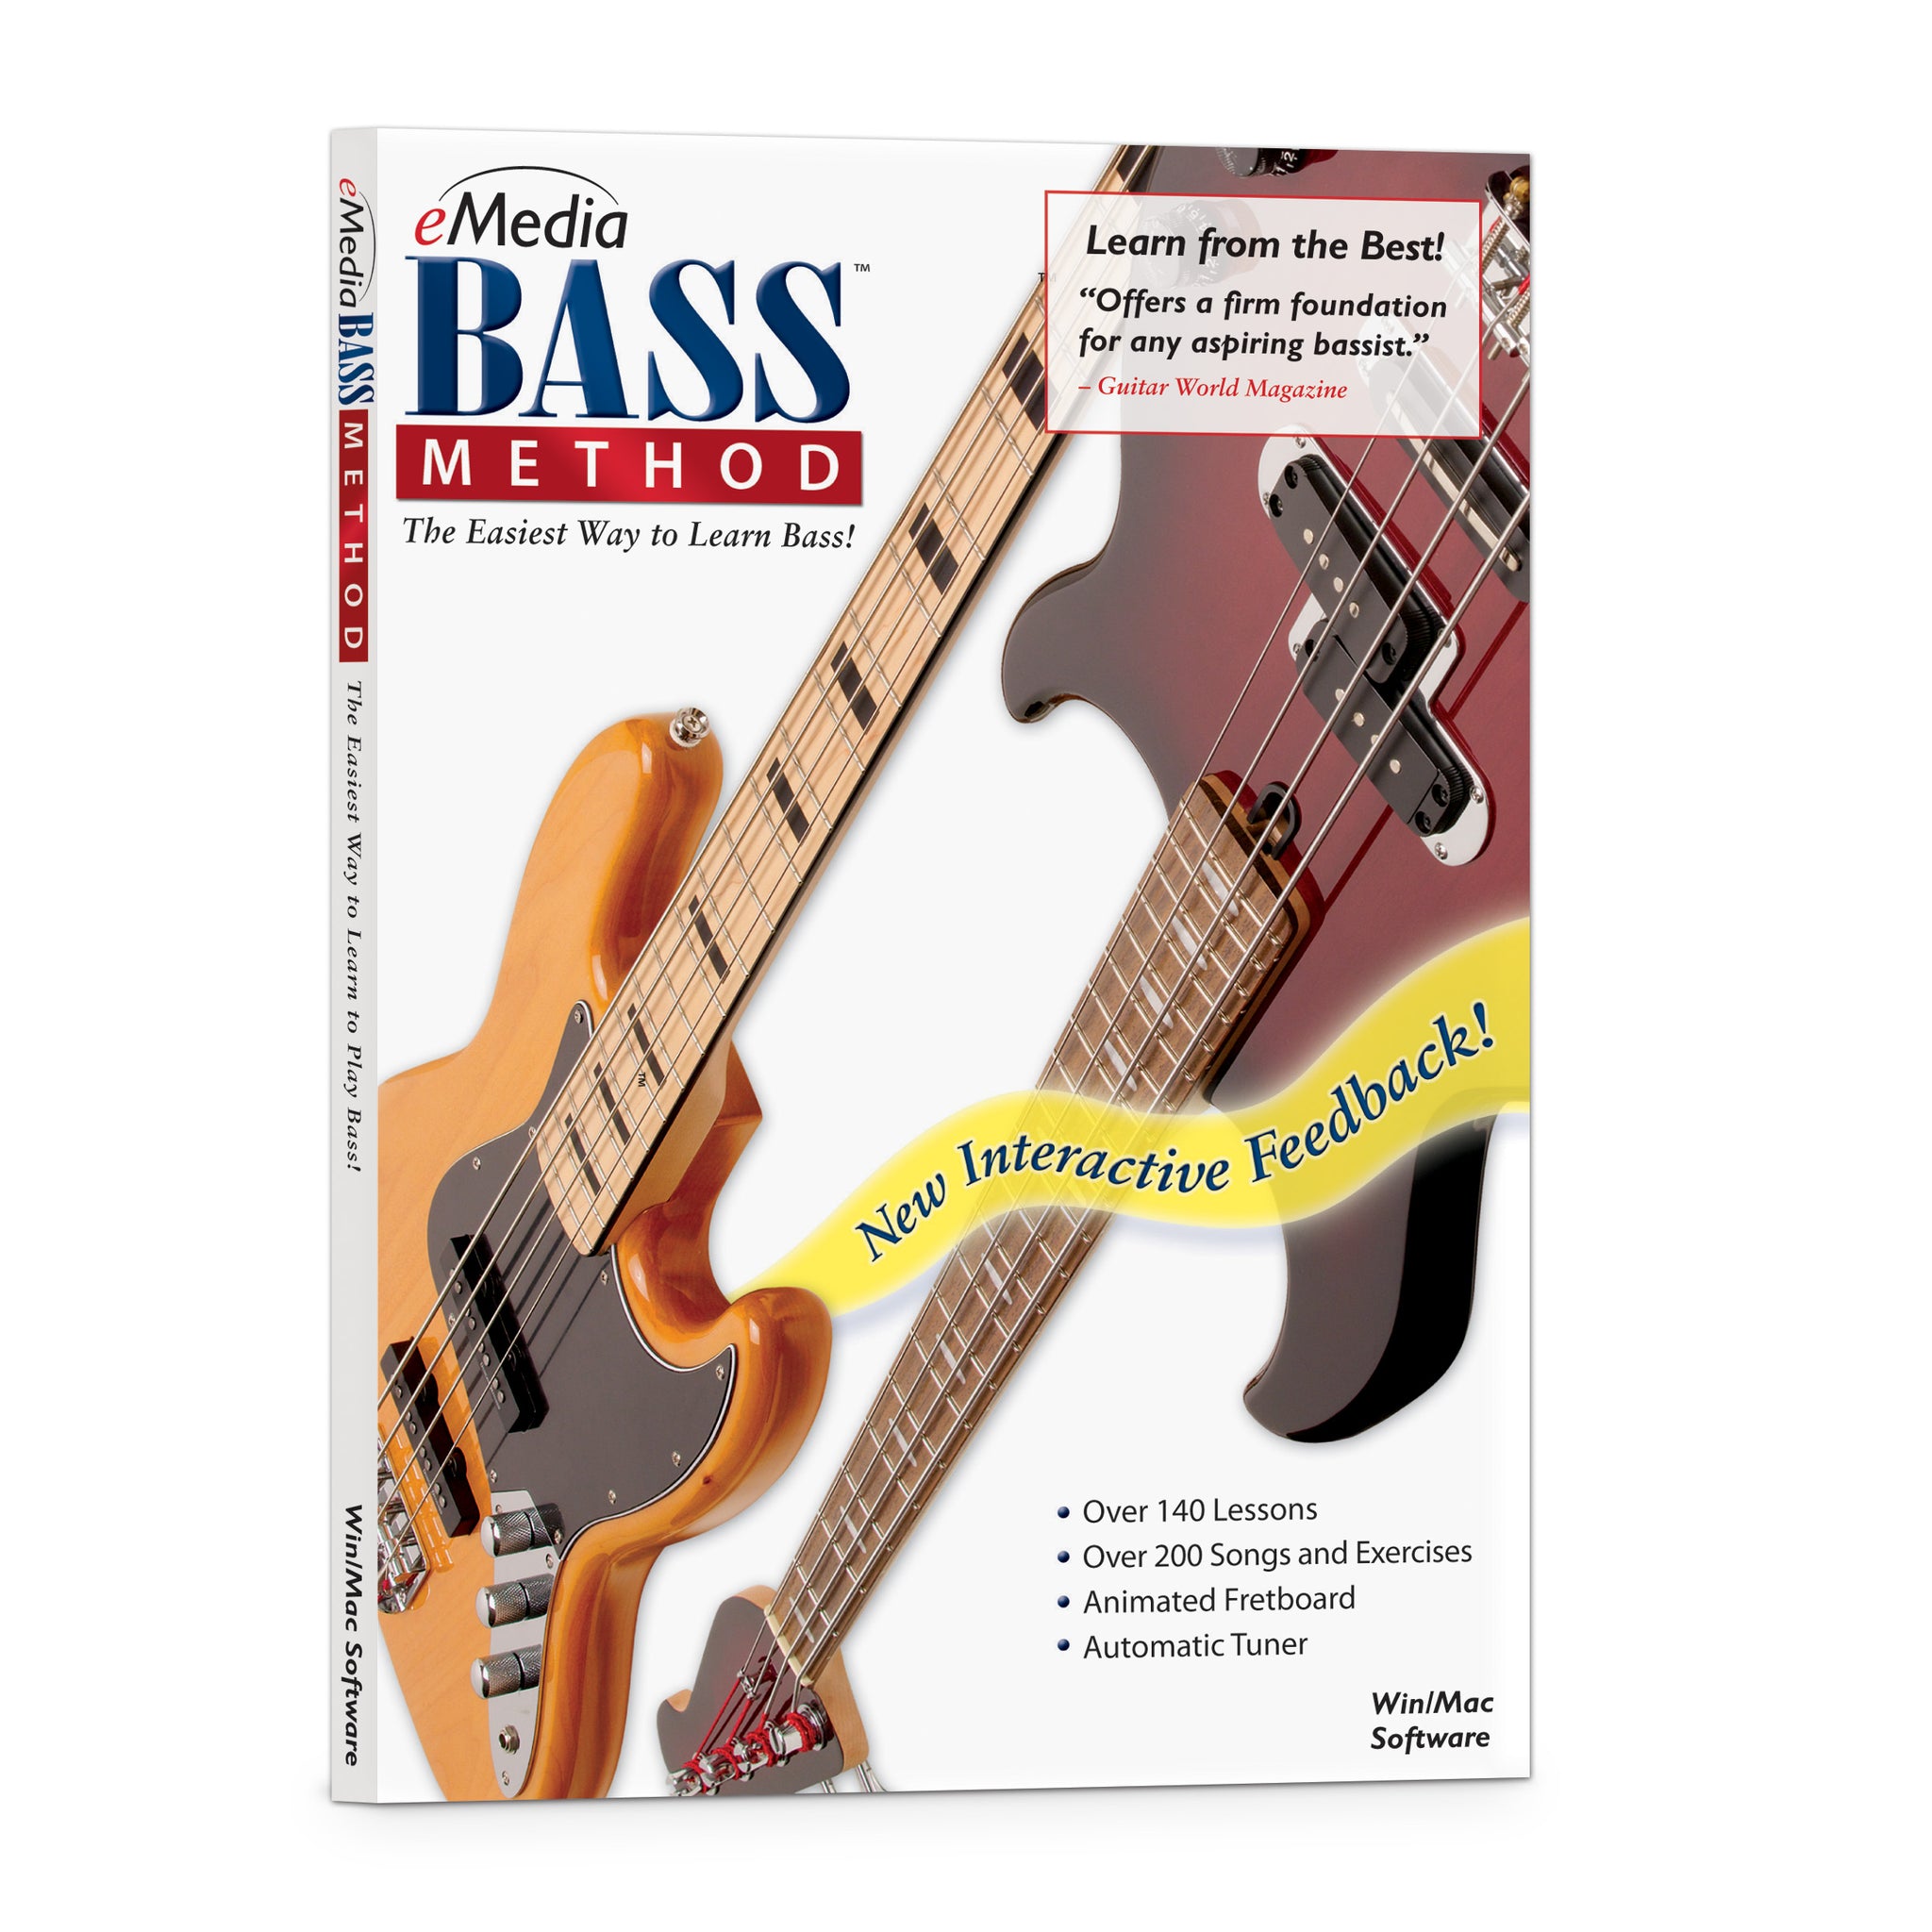 eMedia Bass Method